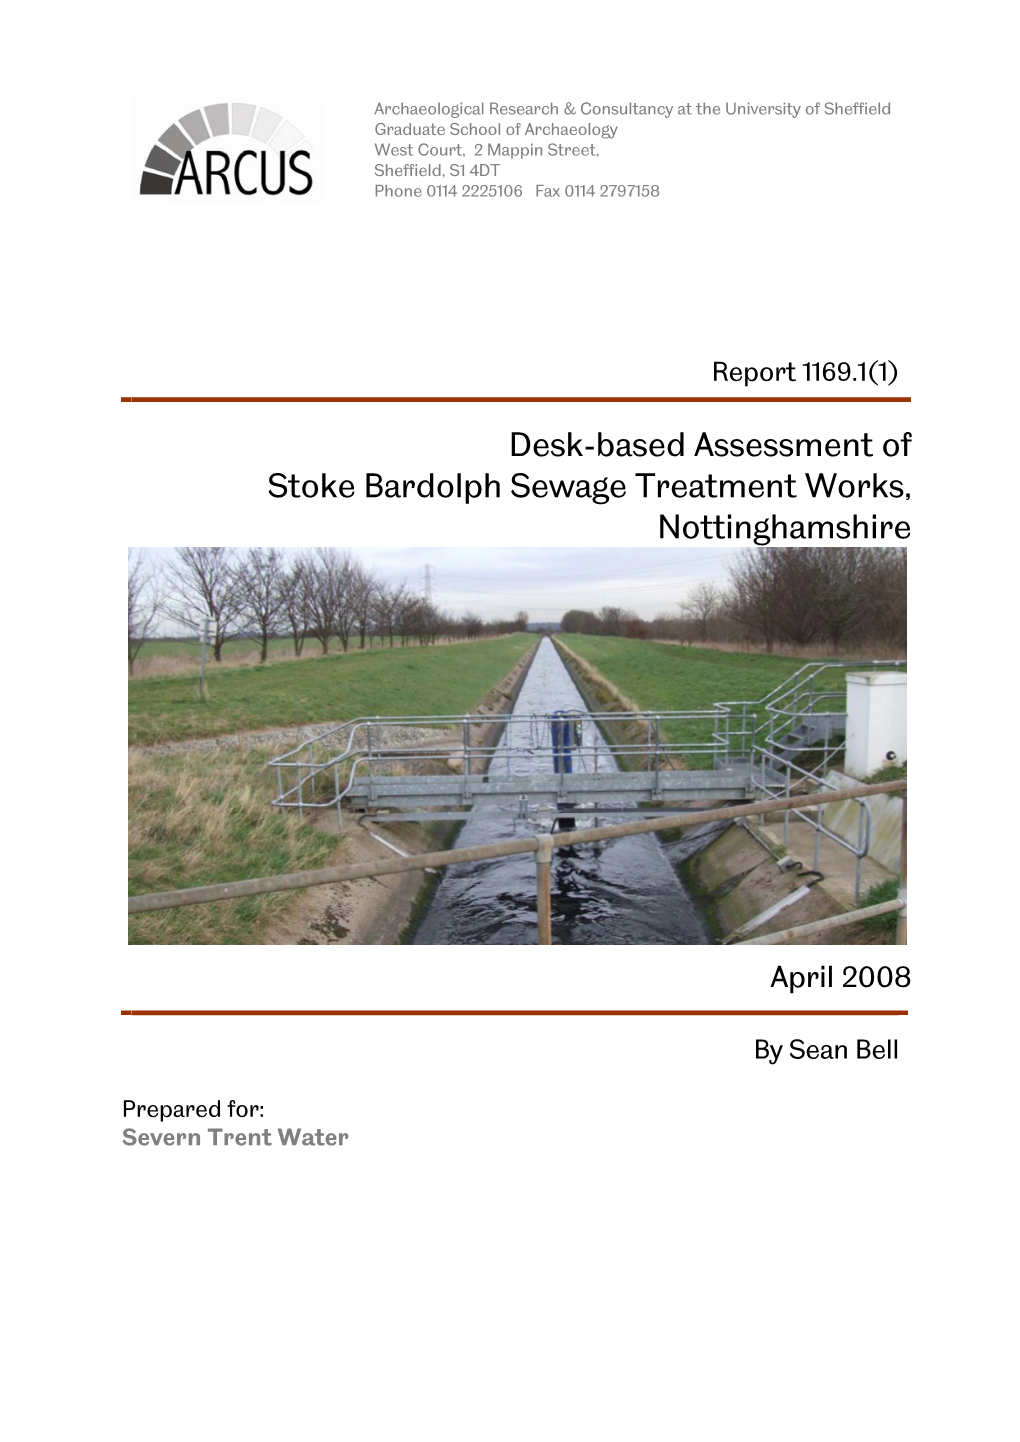 Desk-Based Assessment of Stoke Bardolph Sewage Treatment Works, Nottinghamshire